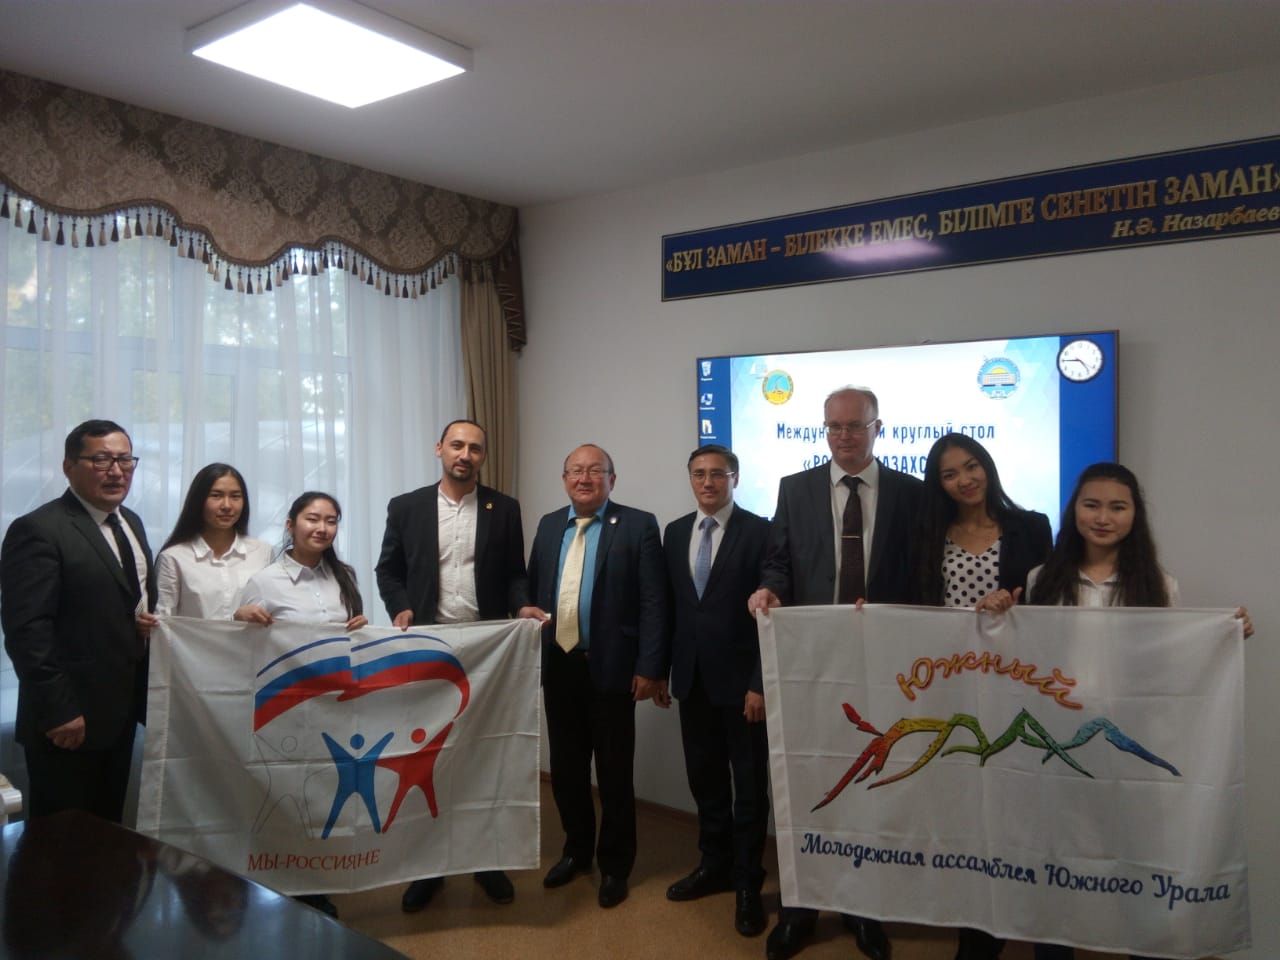 Павлодар – новая площадка молодежного сотрудничества России и Казахстана